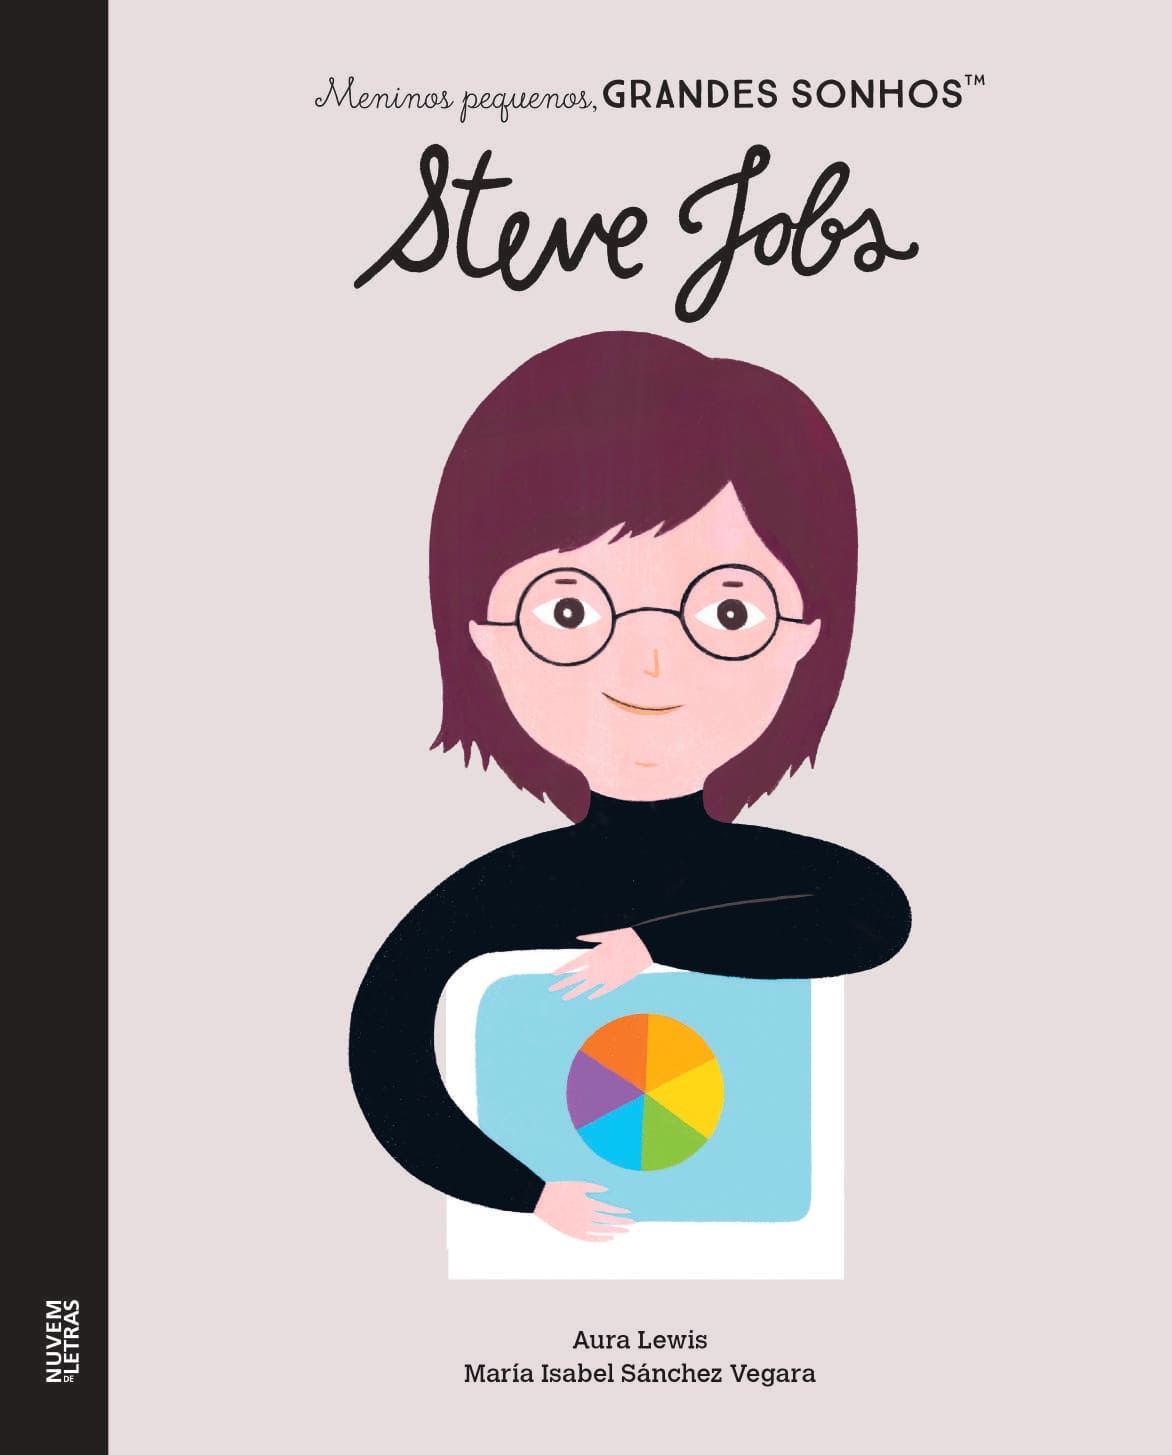 Meninos Pequenos, Grandes Sonhos: Steve Jobs